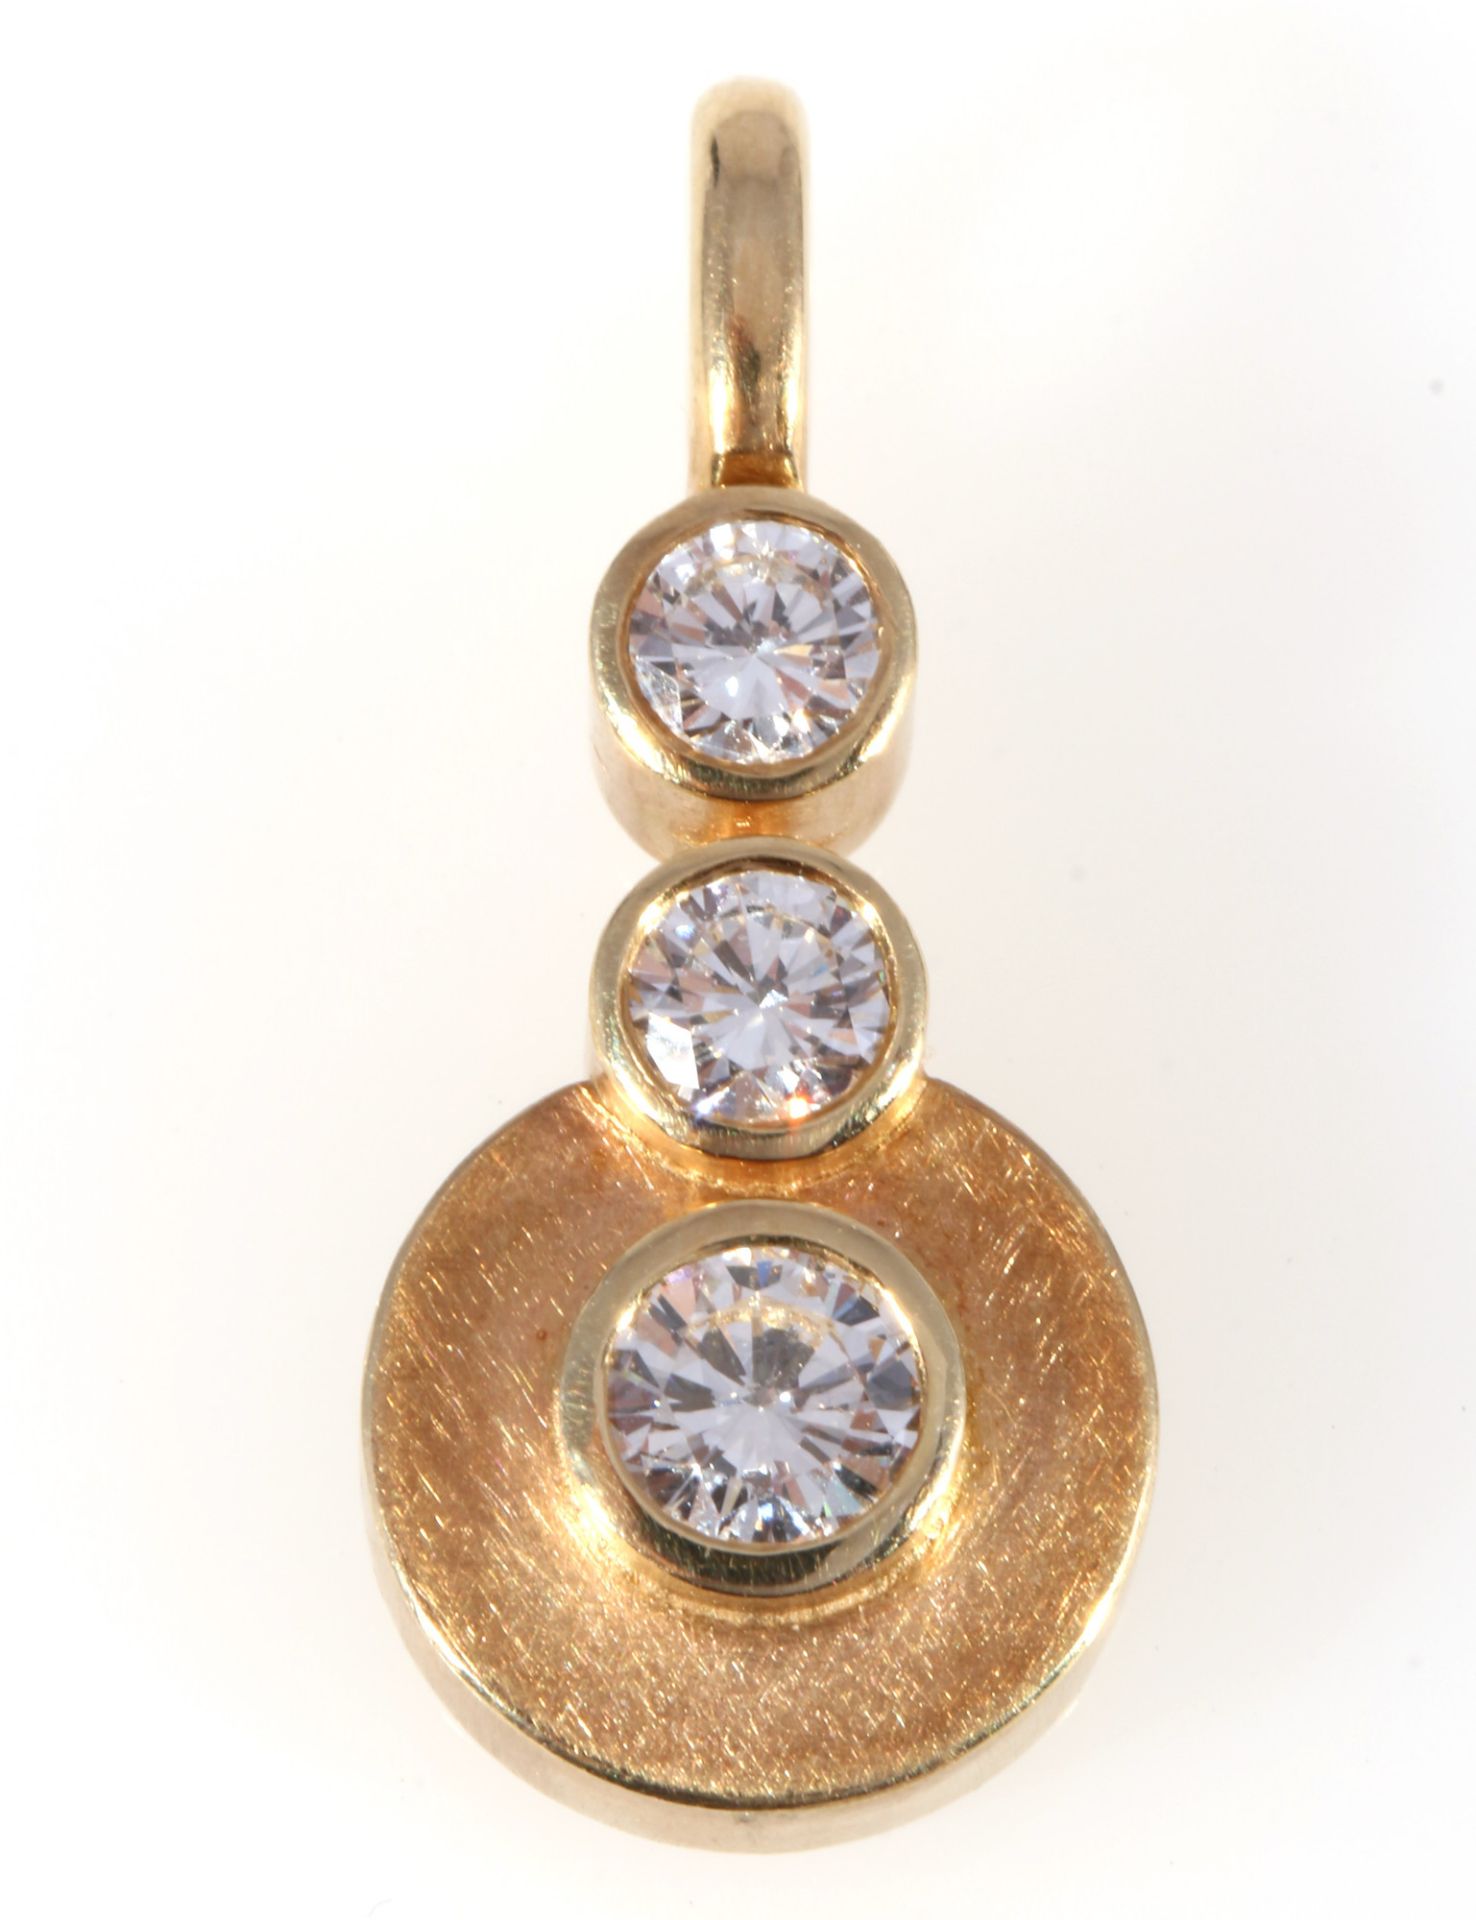 585 Gold Anhänger mit 3 großen Brillanten ca. 0,85ct, 14K gold pendant with 3 large diamonds,